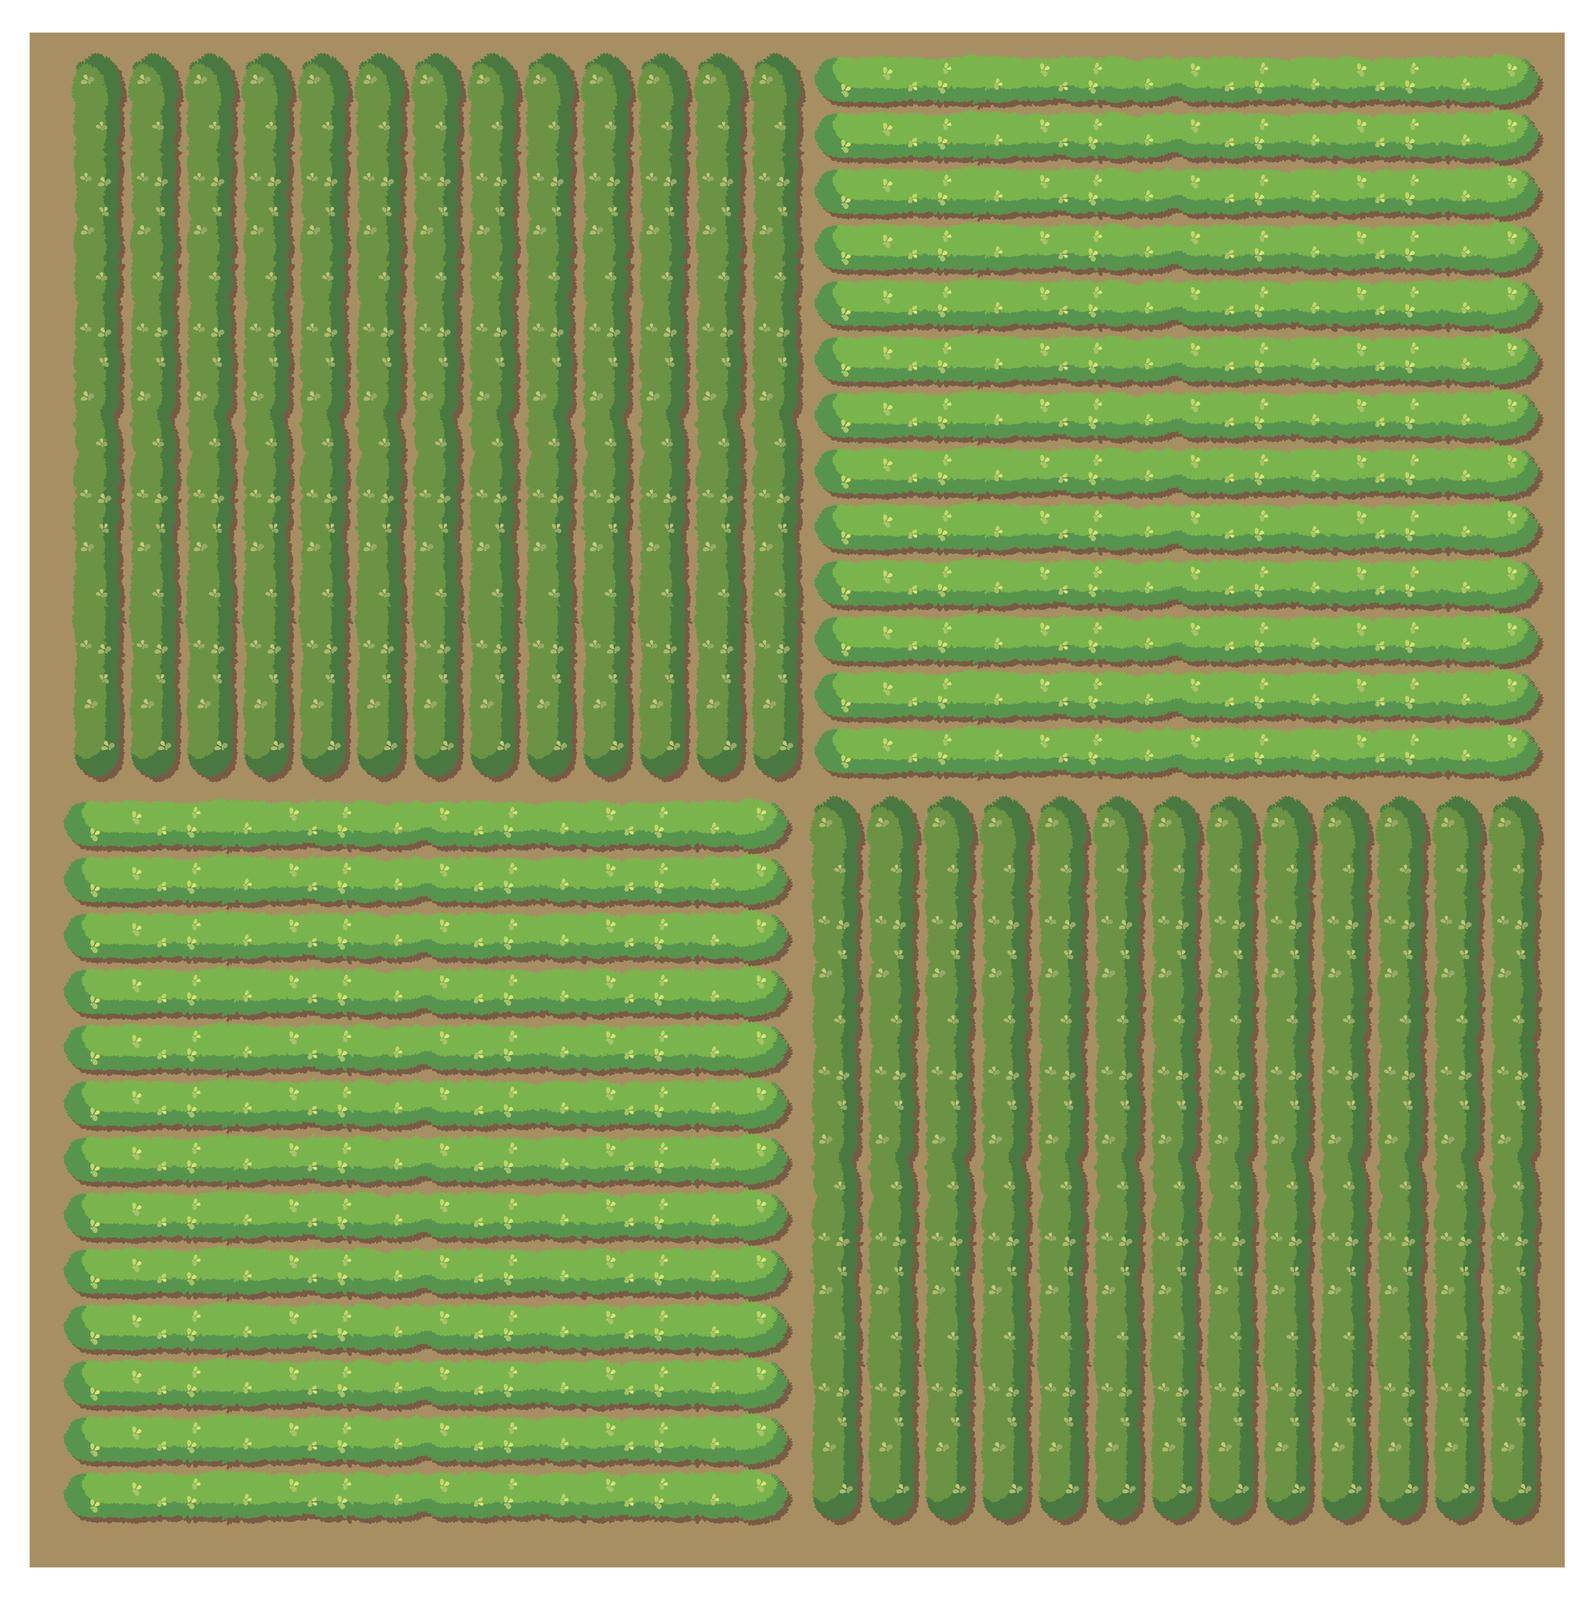 Simple pattern of crop by iimages